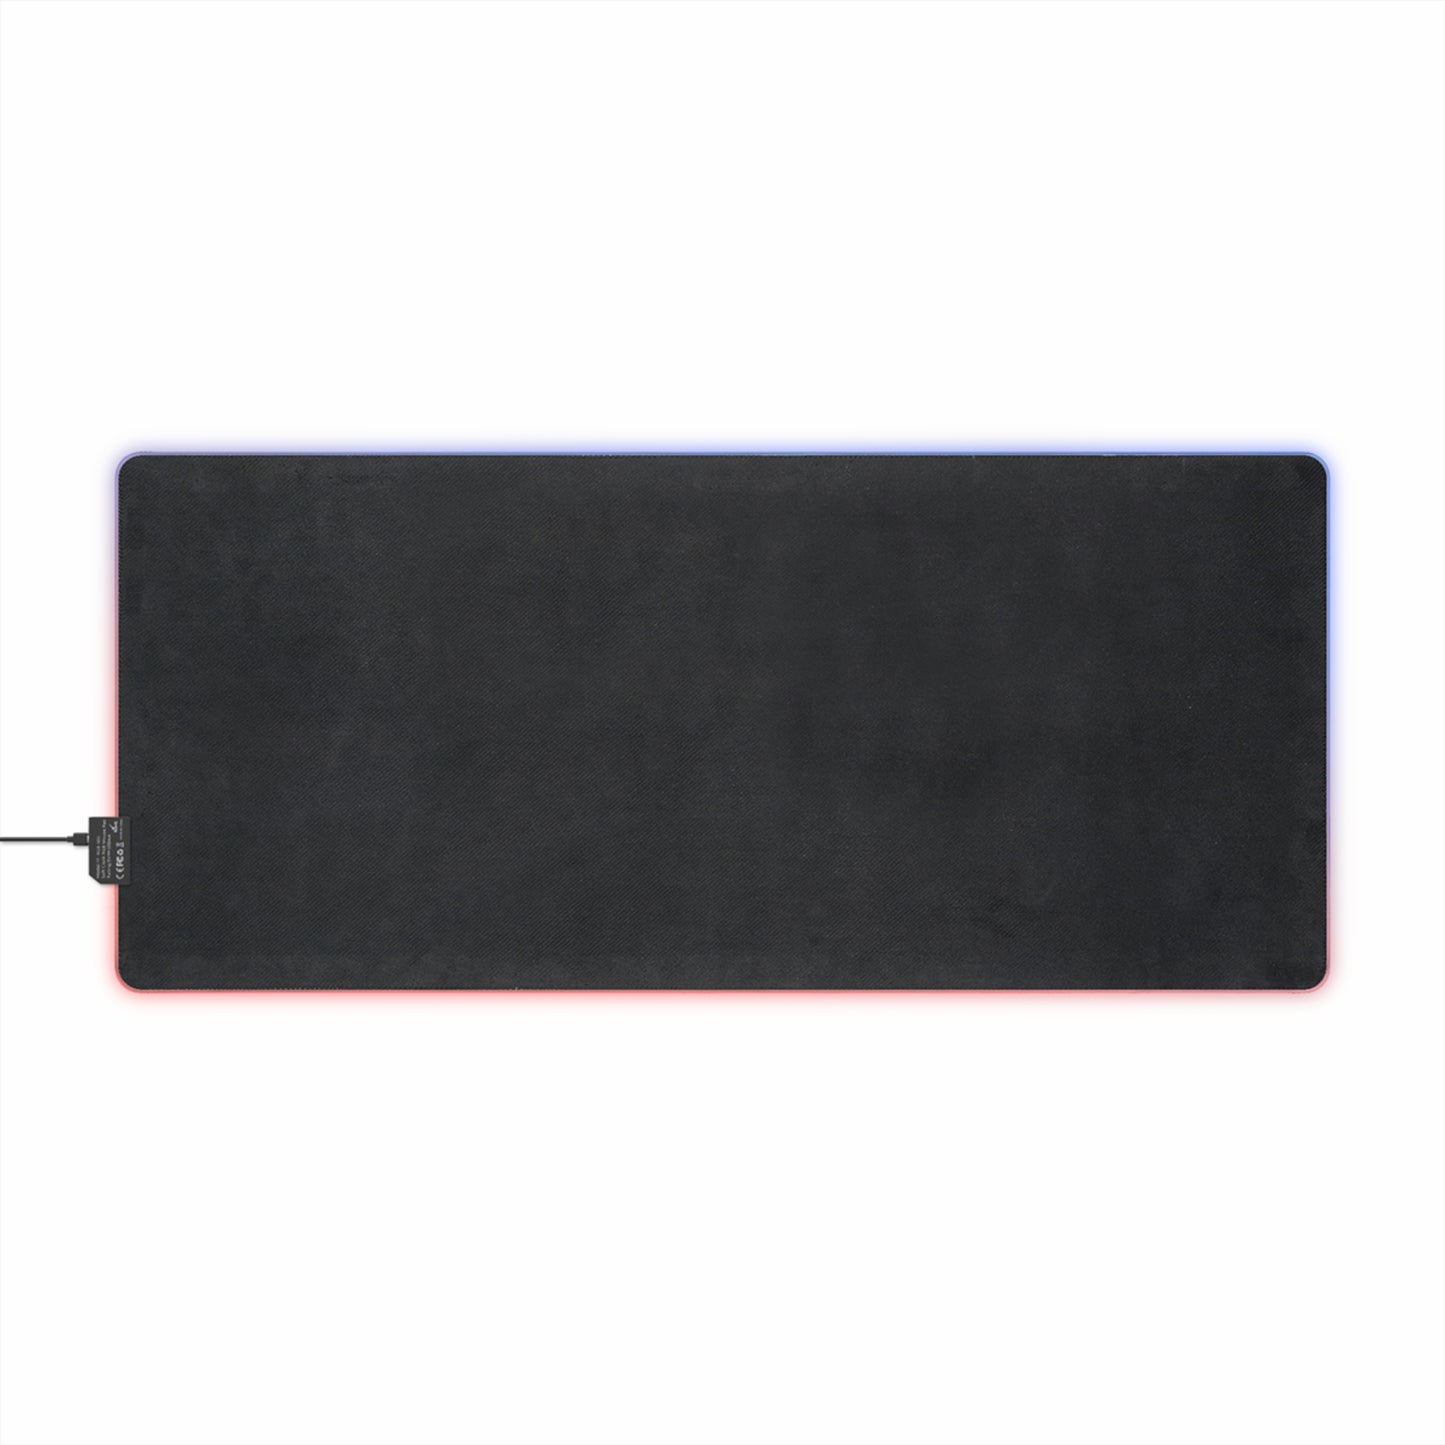 A.R.E.S. RGB LED Mouse Pad (Desk Mat)